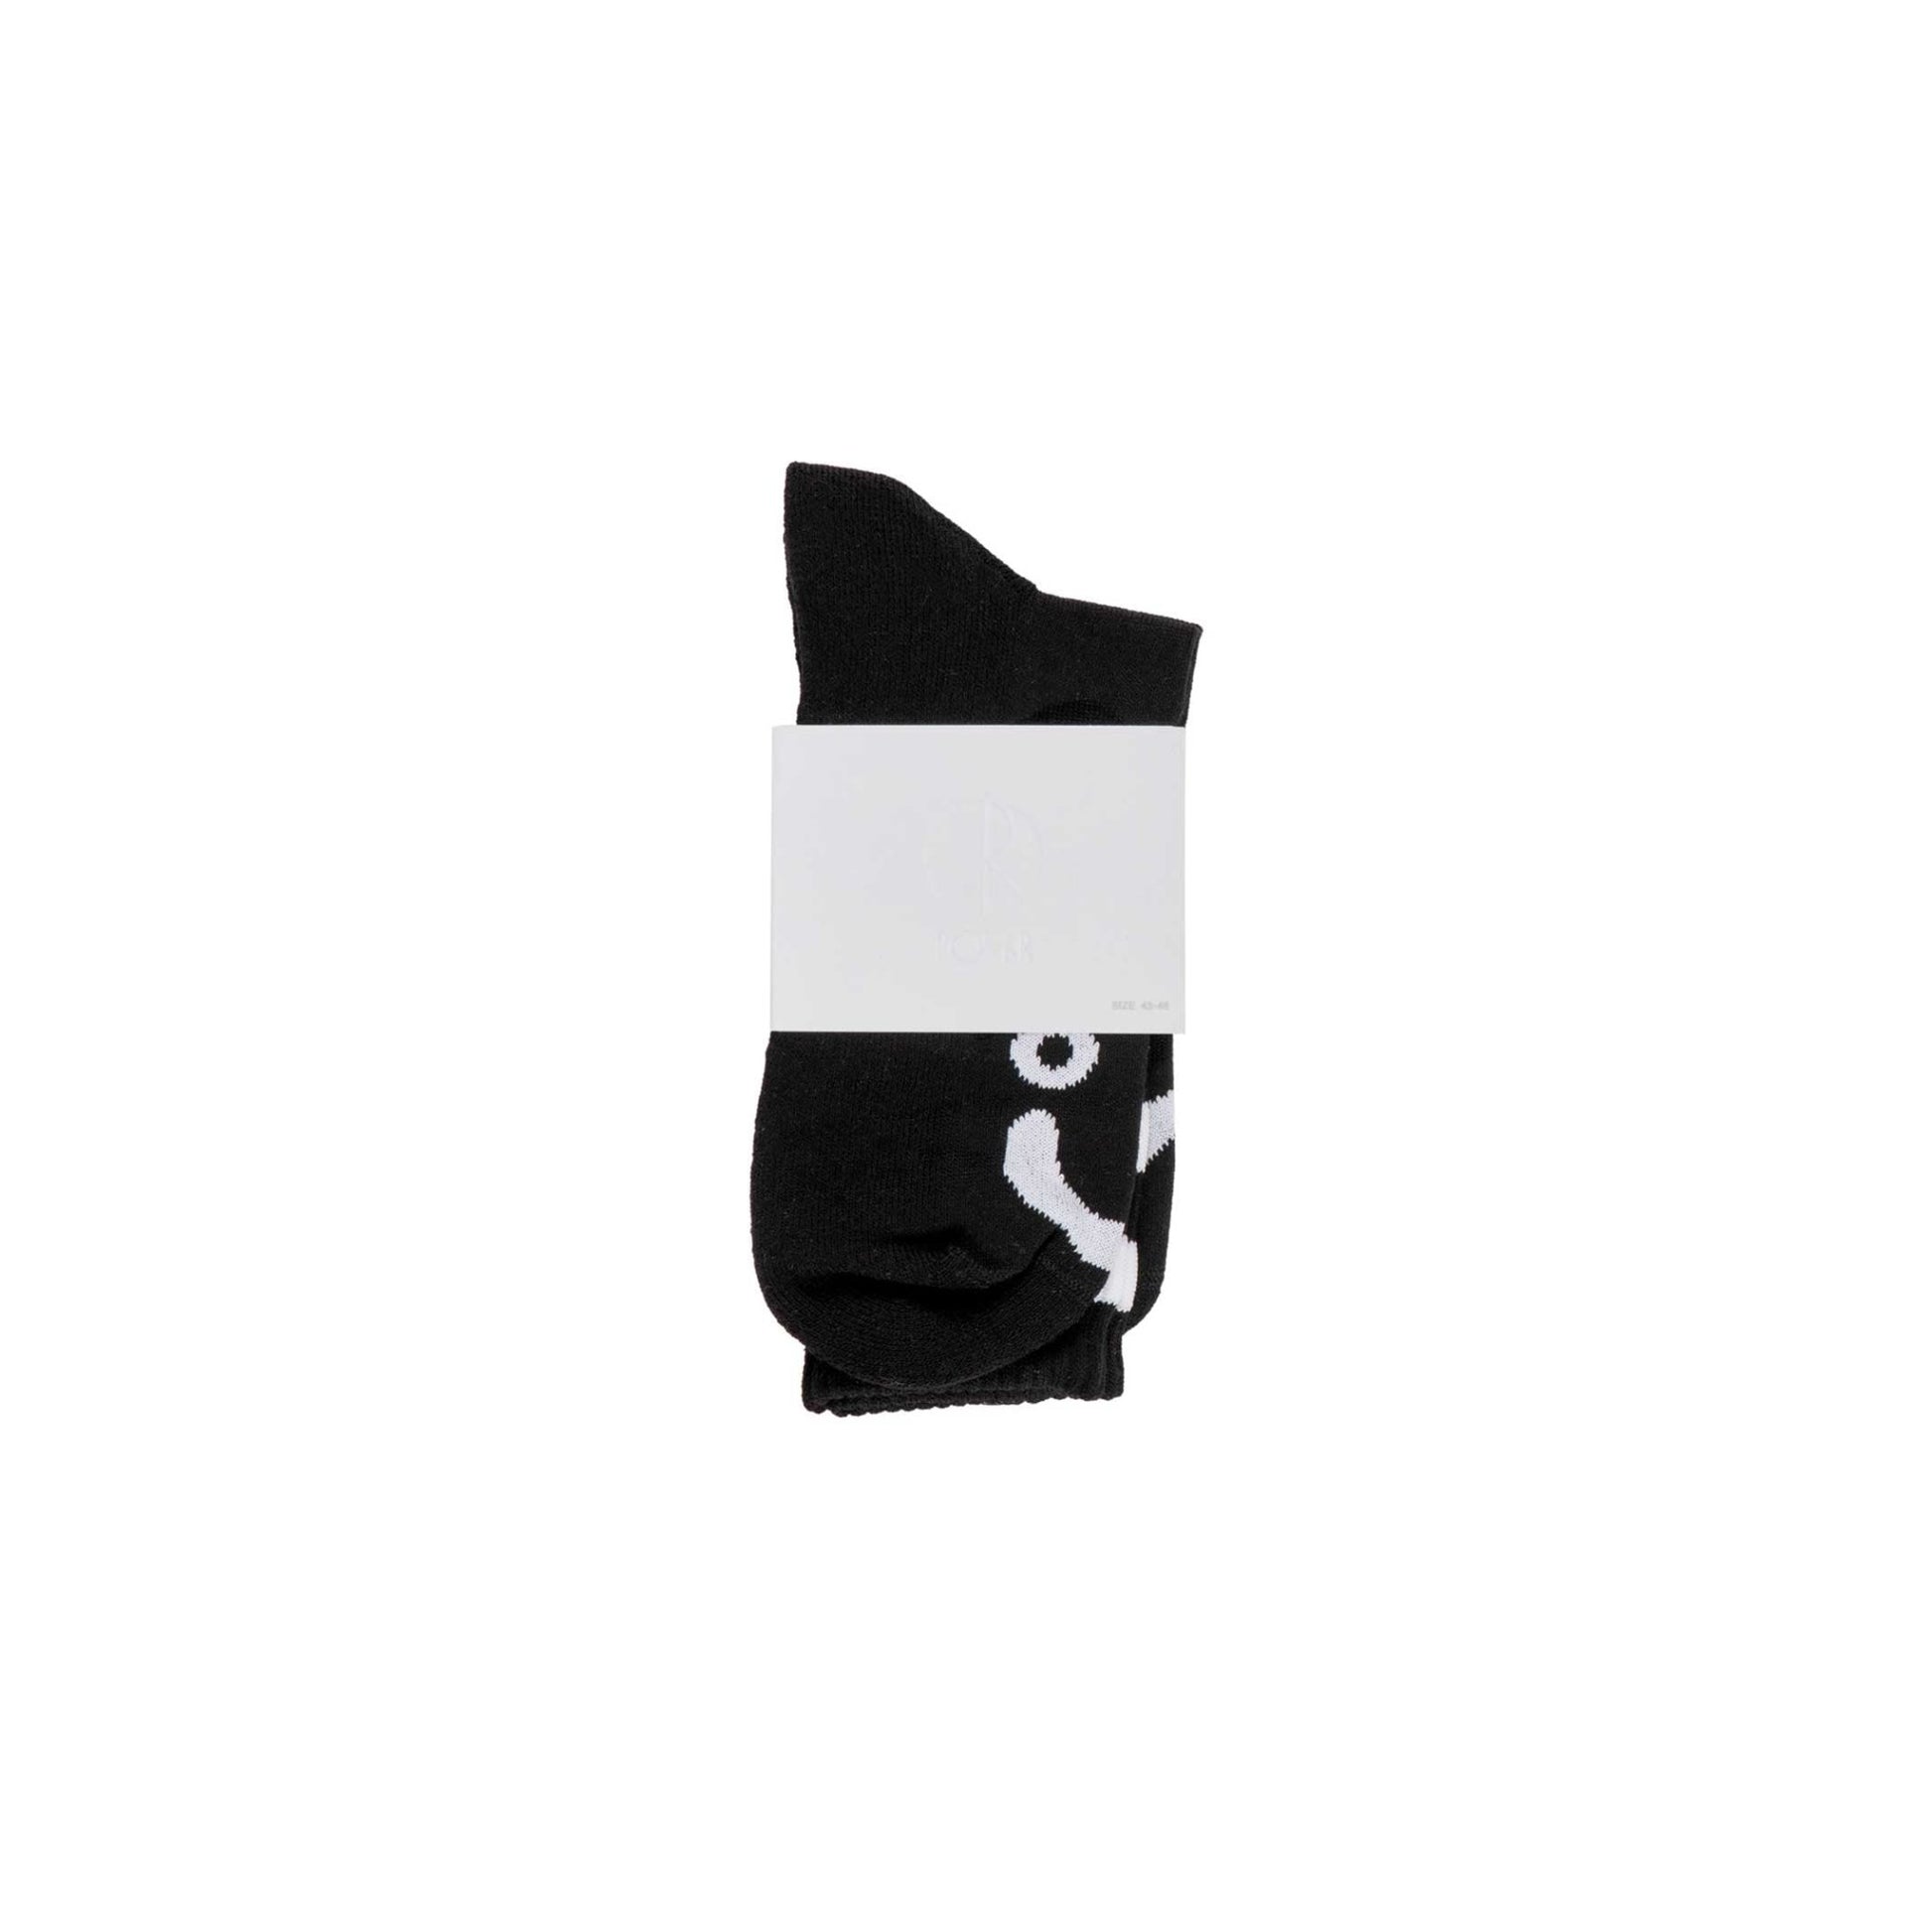 Polar Happy Sad socks, black, black - Tiki Room Skateboards - 2